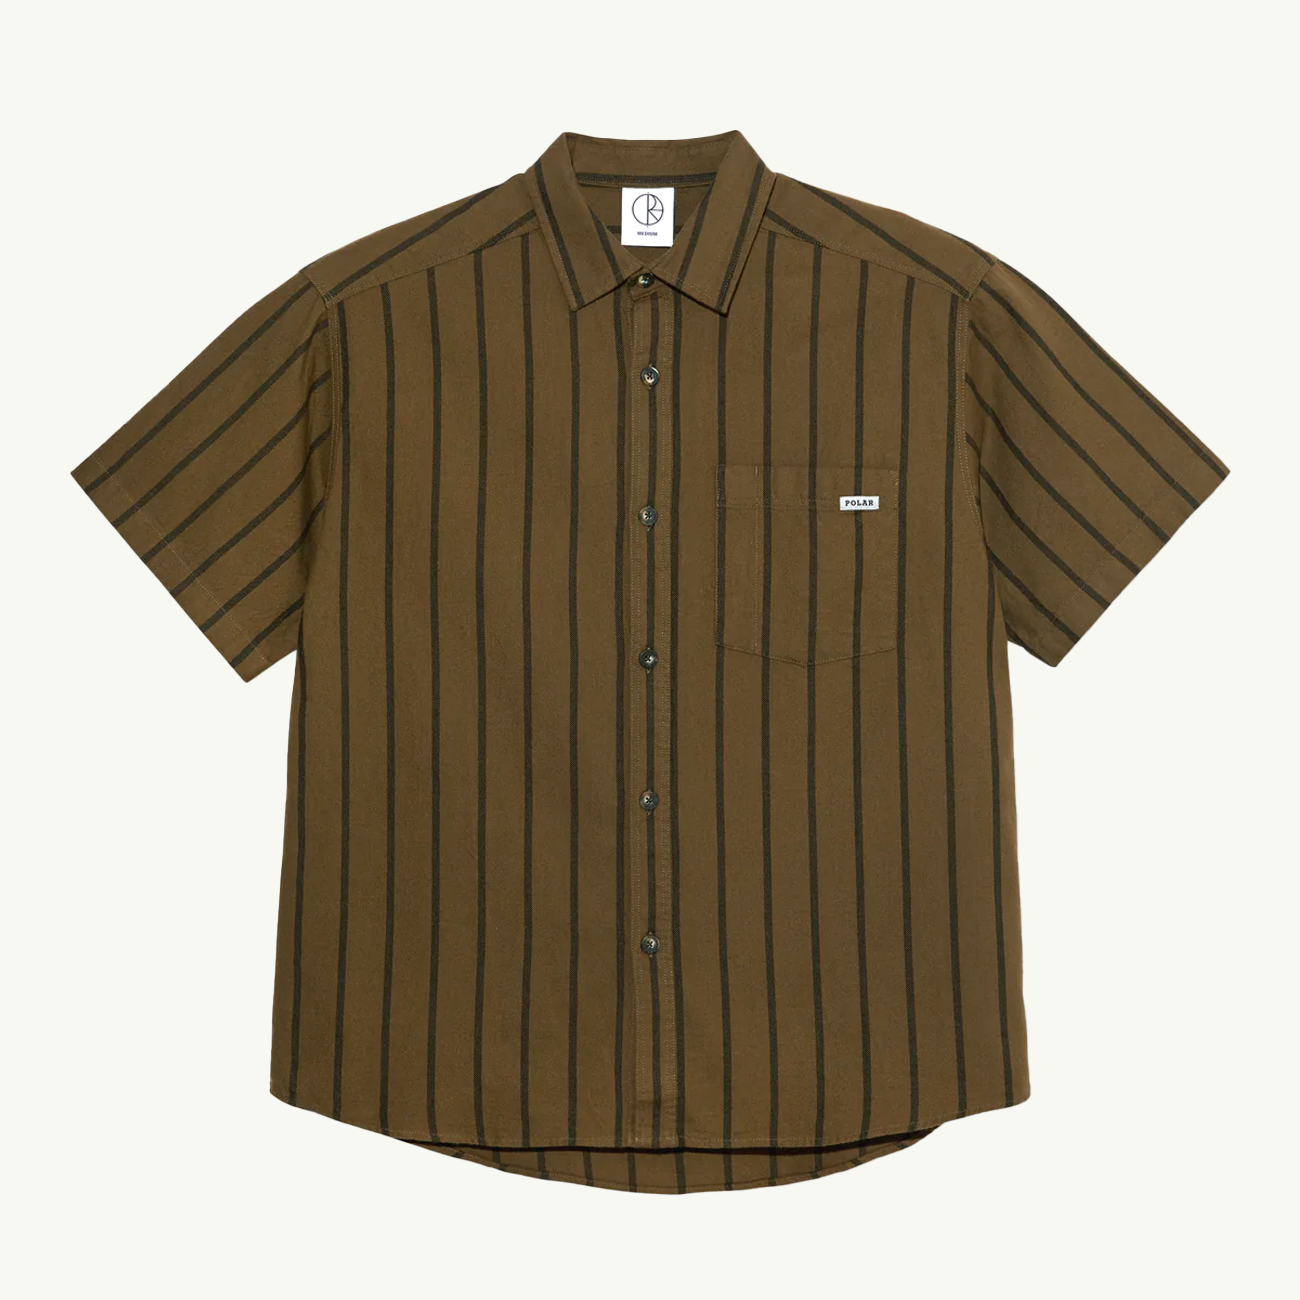 Mitchell Shirt Twill - Beech Green